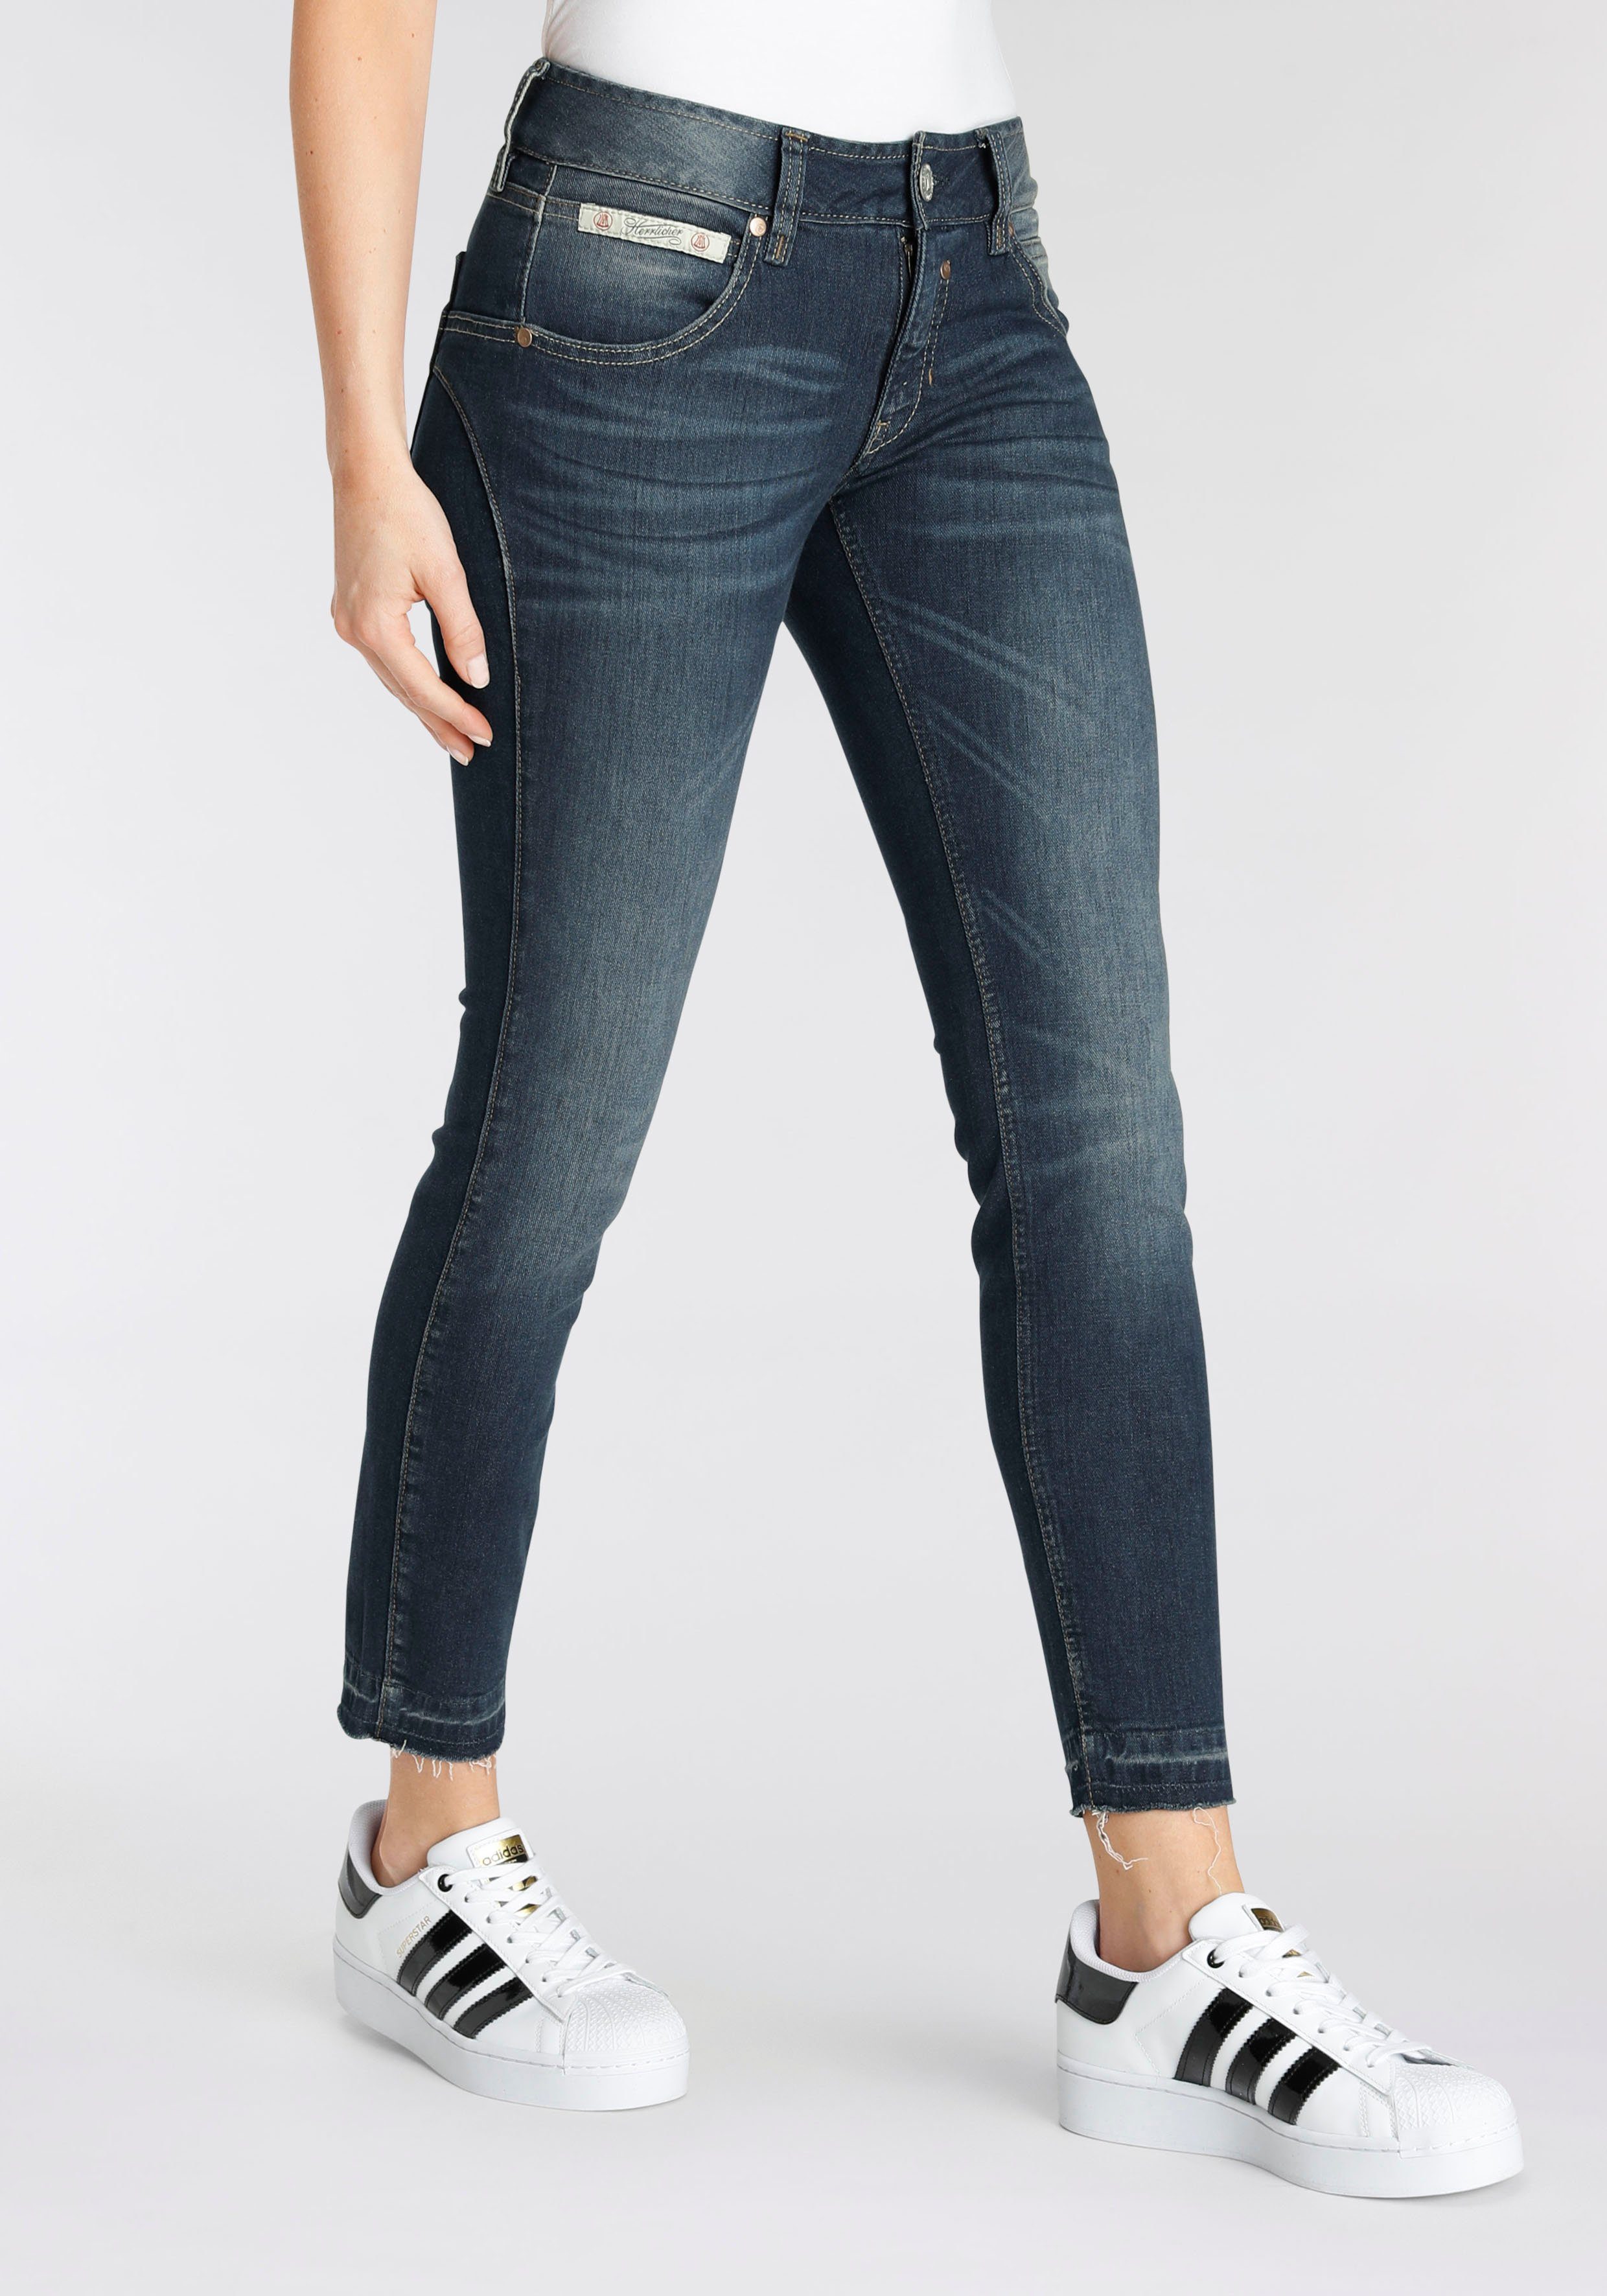 Herrlicher Slim-fit-Jeans TOUCH in 7/8 Länge und ausgefranstem Hosensaum,  Hoher Tragekomfort dank Elasthan